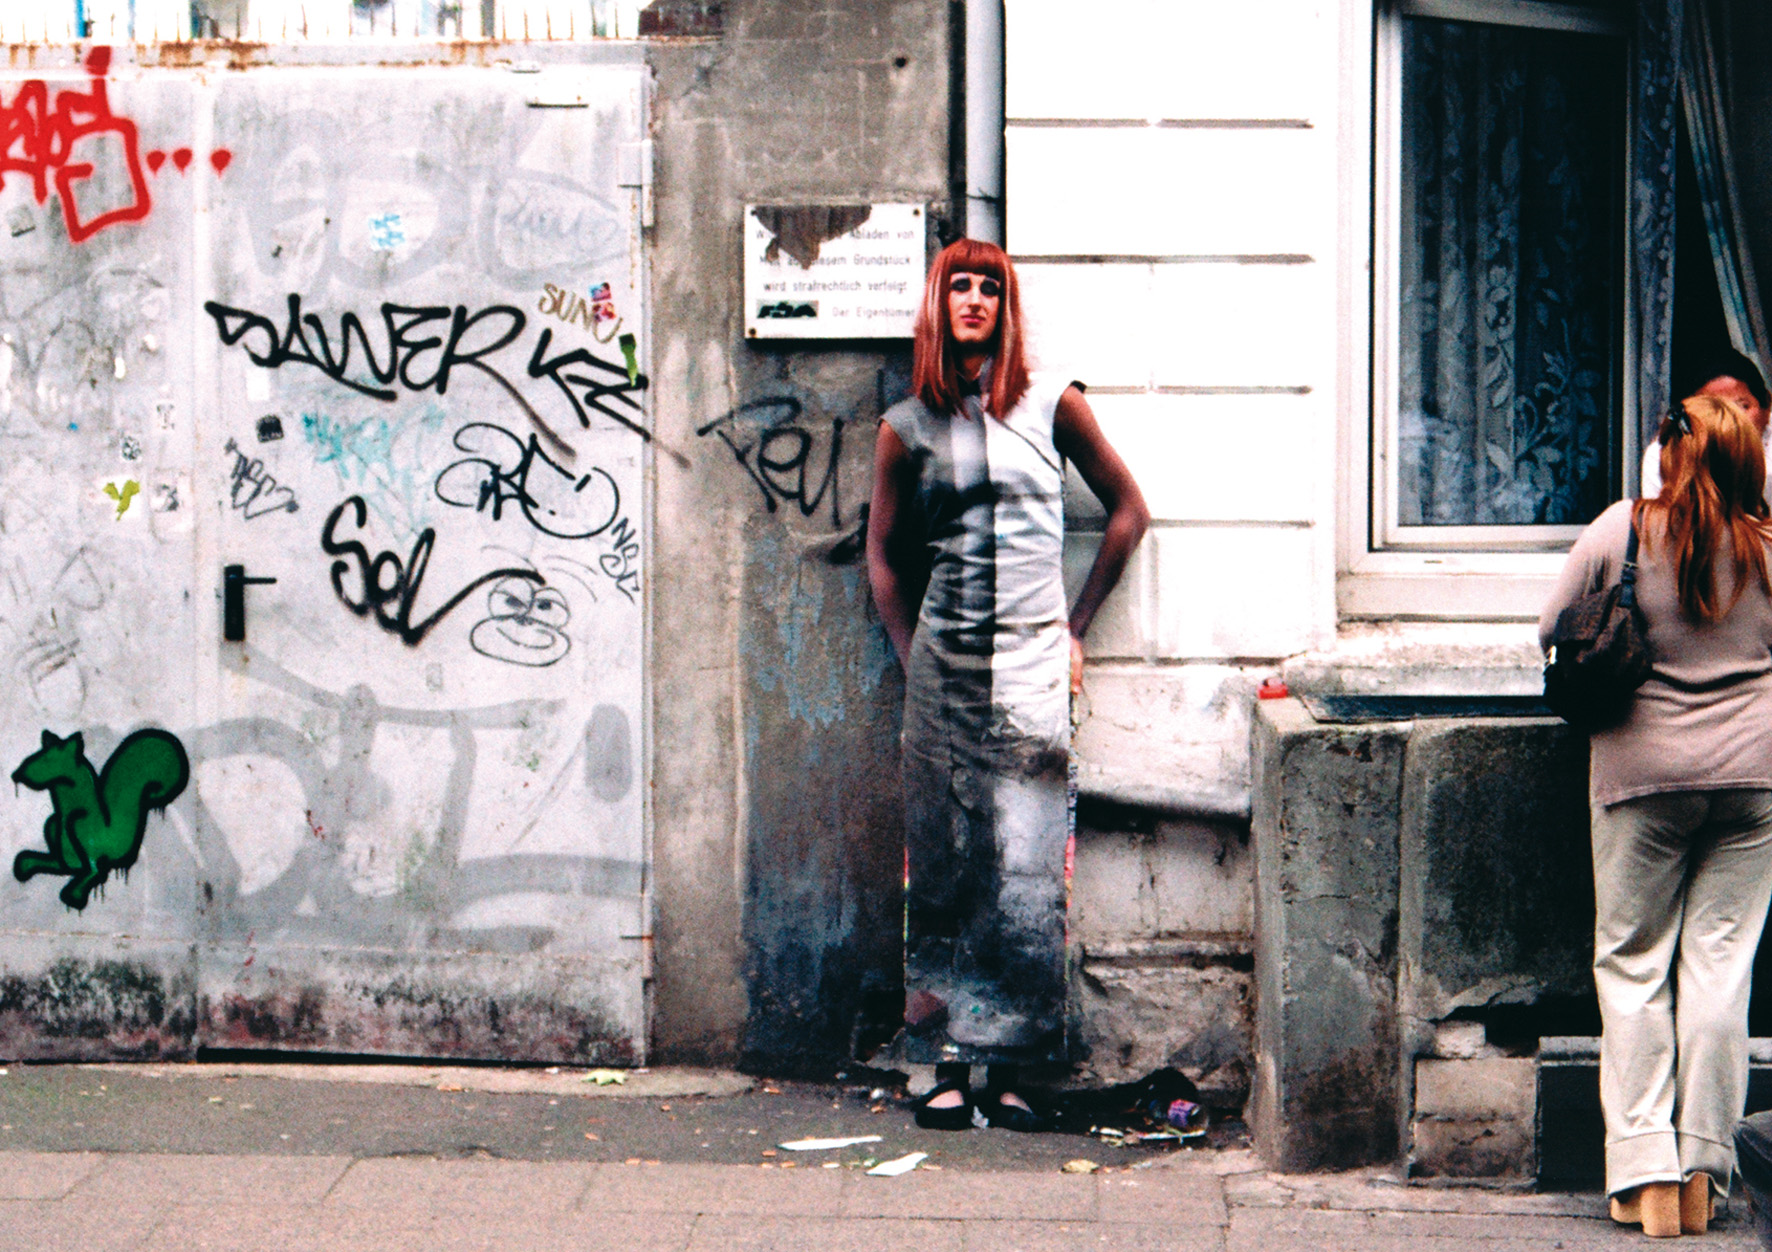   Mimesis – Was ist die Schmuckstrasse?    Arbeit von Frauke Janssen, 2003    Ort: Schmuckstrasse  